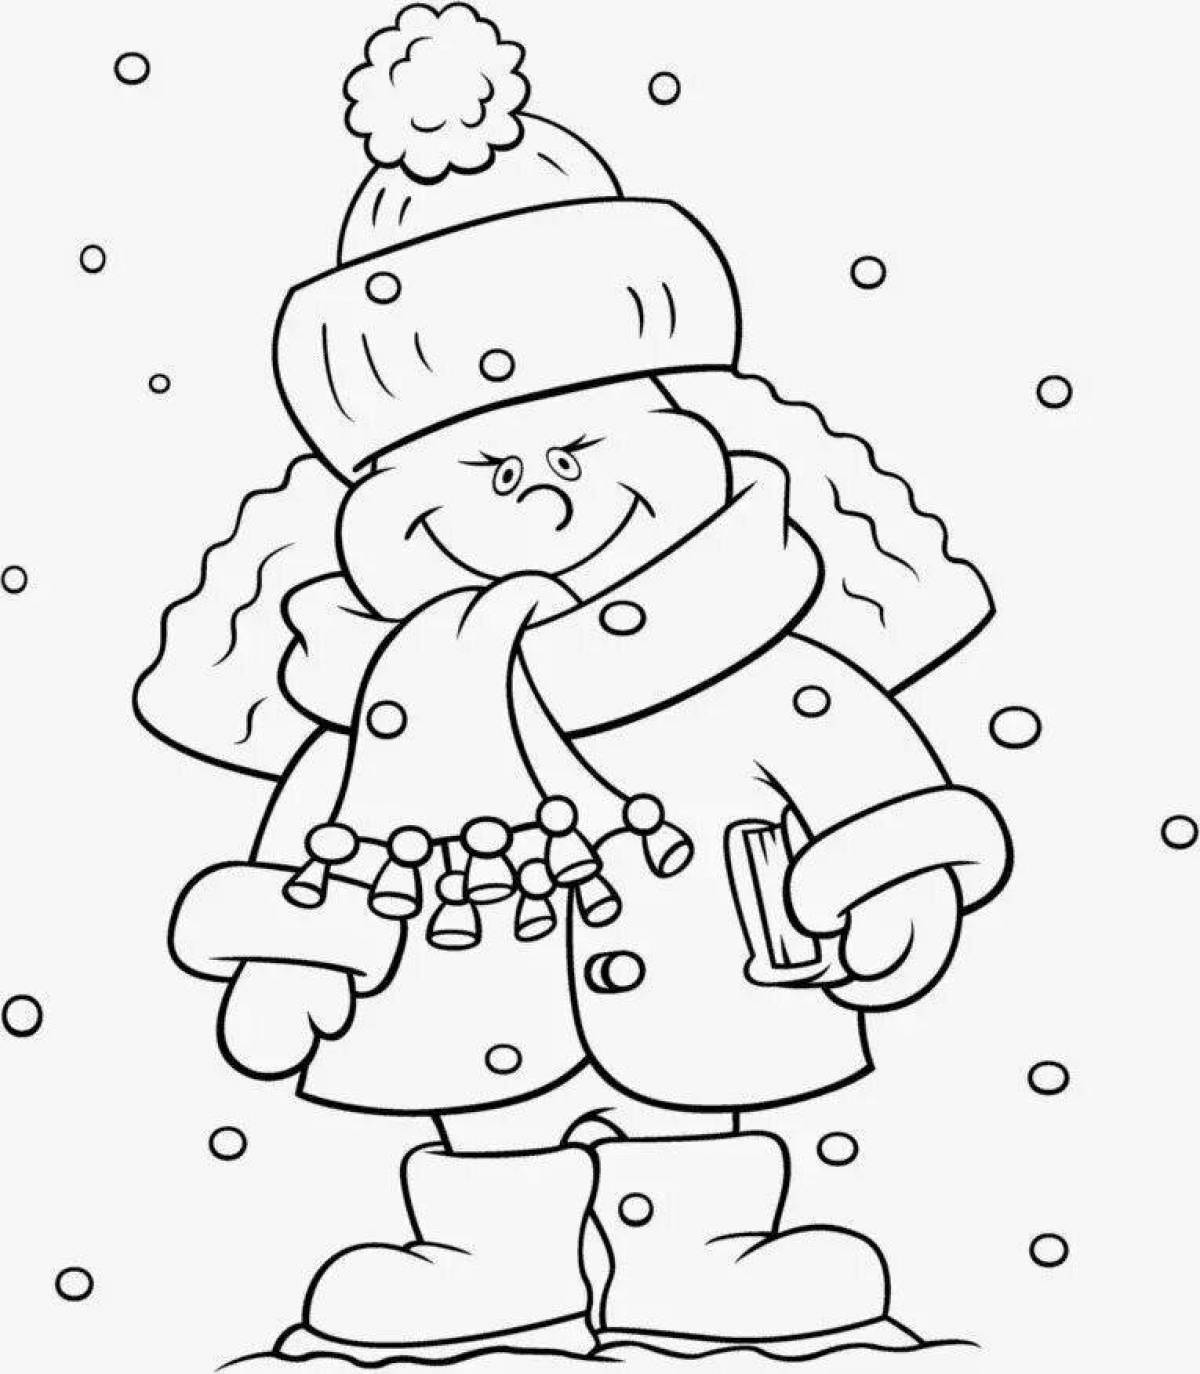 Очаровательная раскраска для детей мальчик в зимней одежде